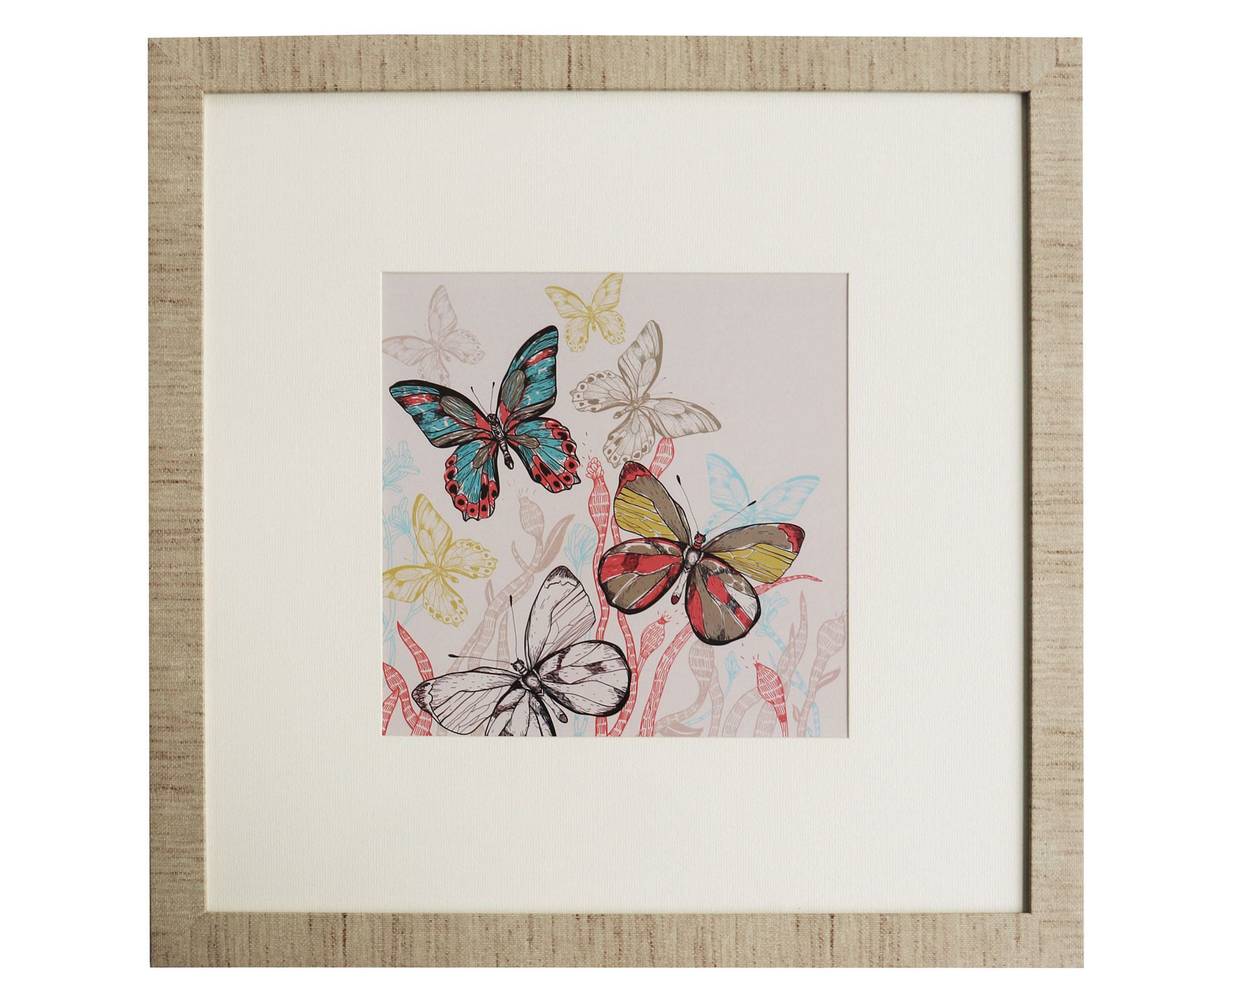 Ronda cuadro mariposas (50 x 50 cm)